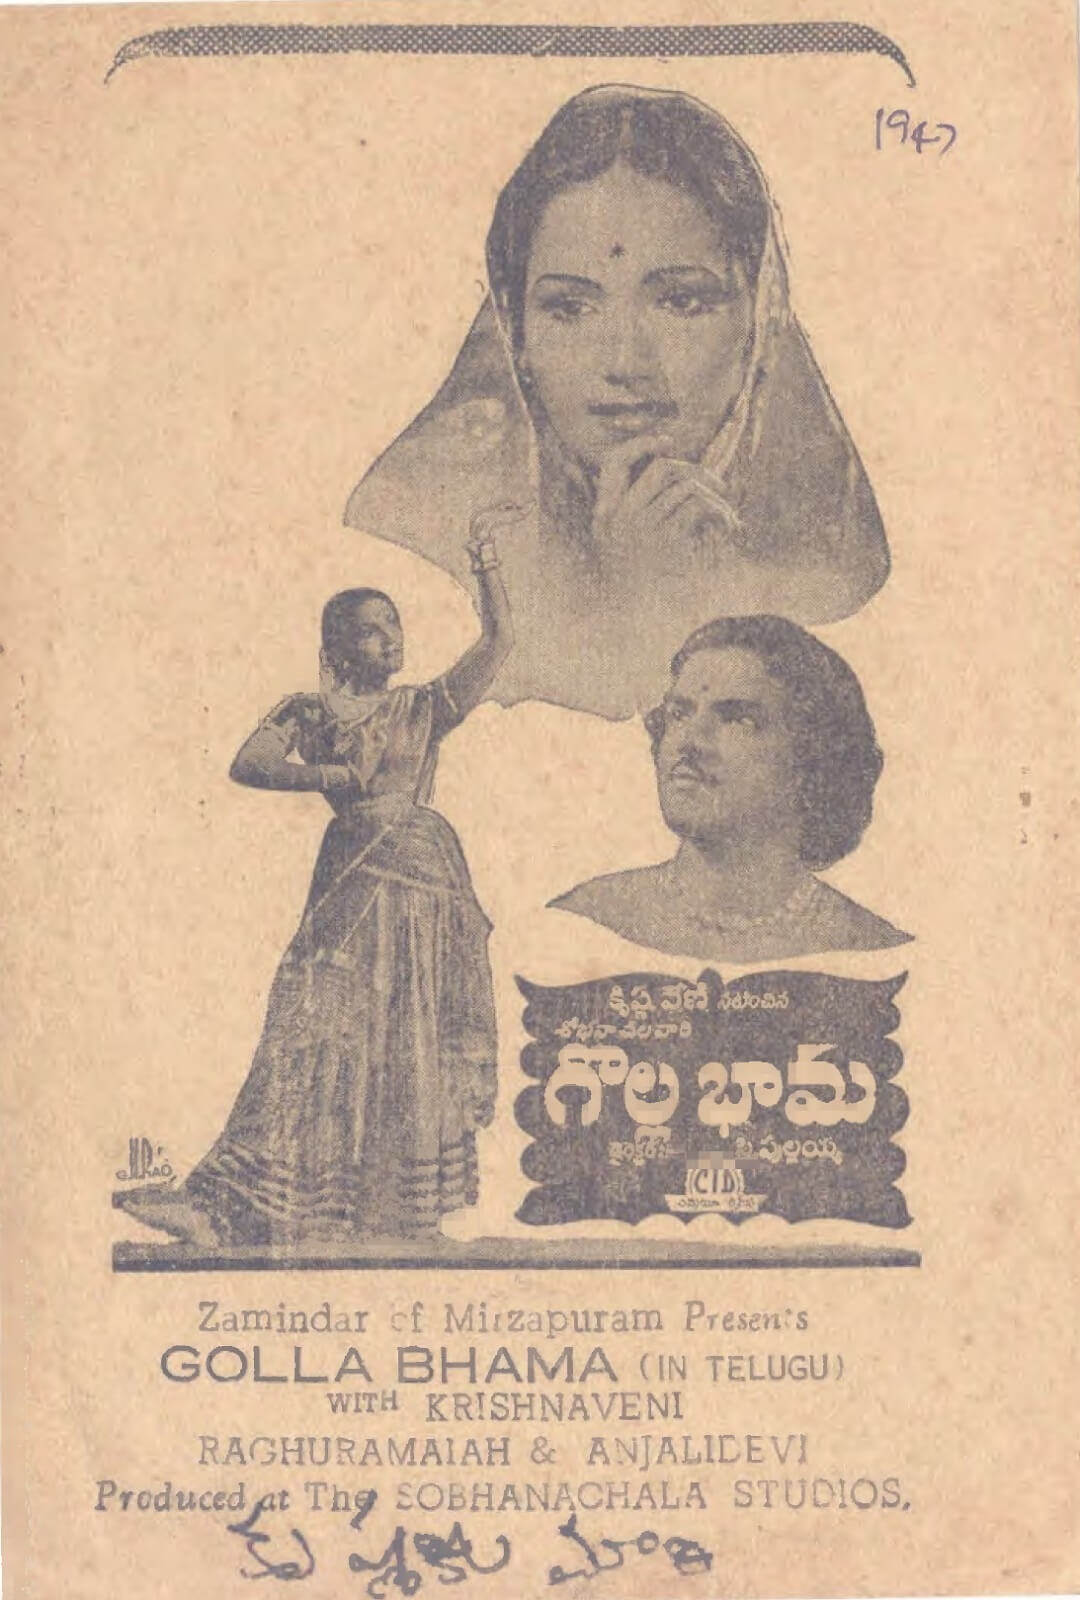 Figure 2. Songbook cover for Gollabhama (1947) featuring C. Krishnaveni